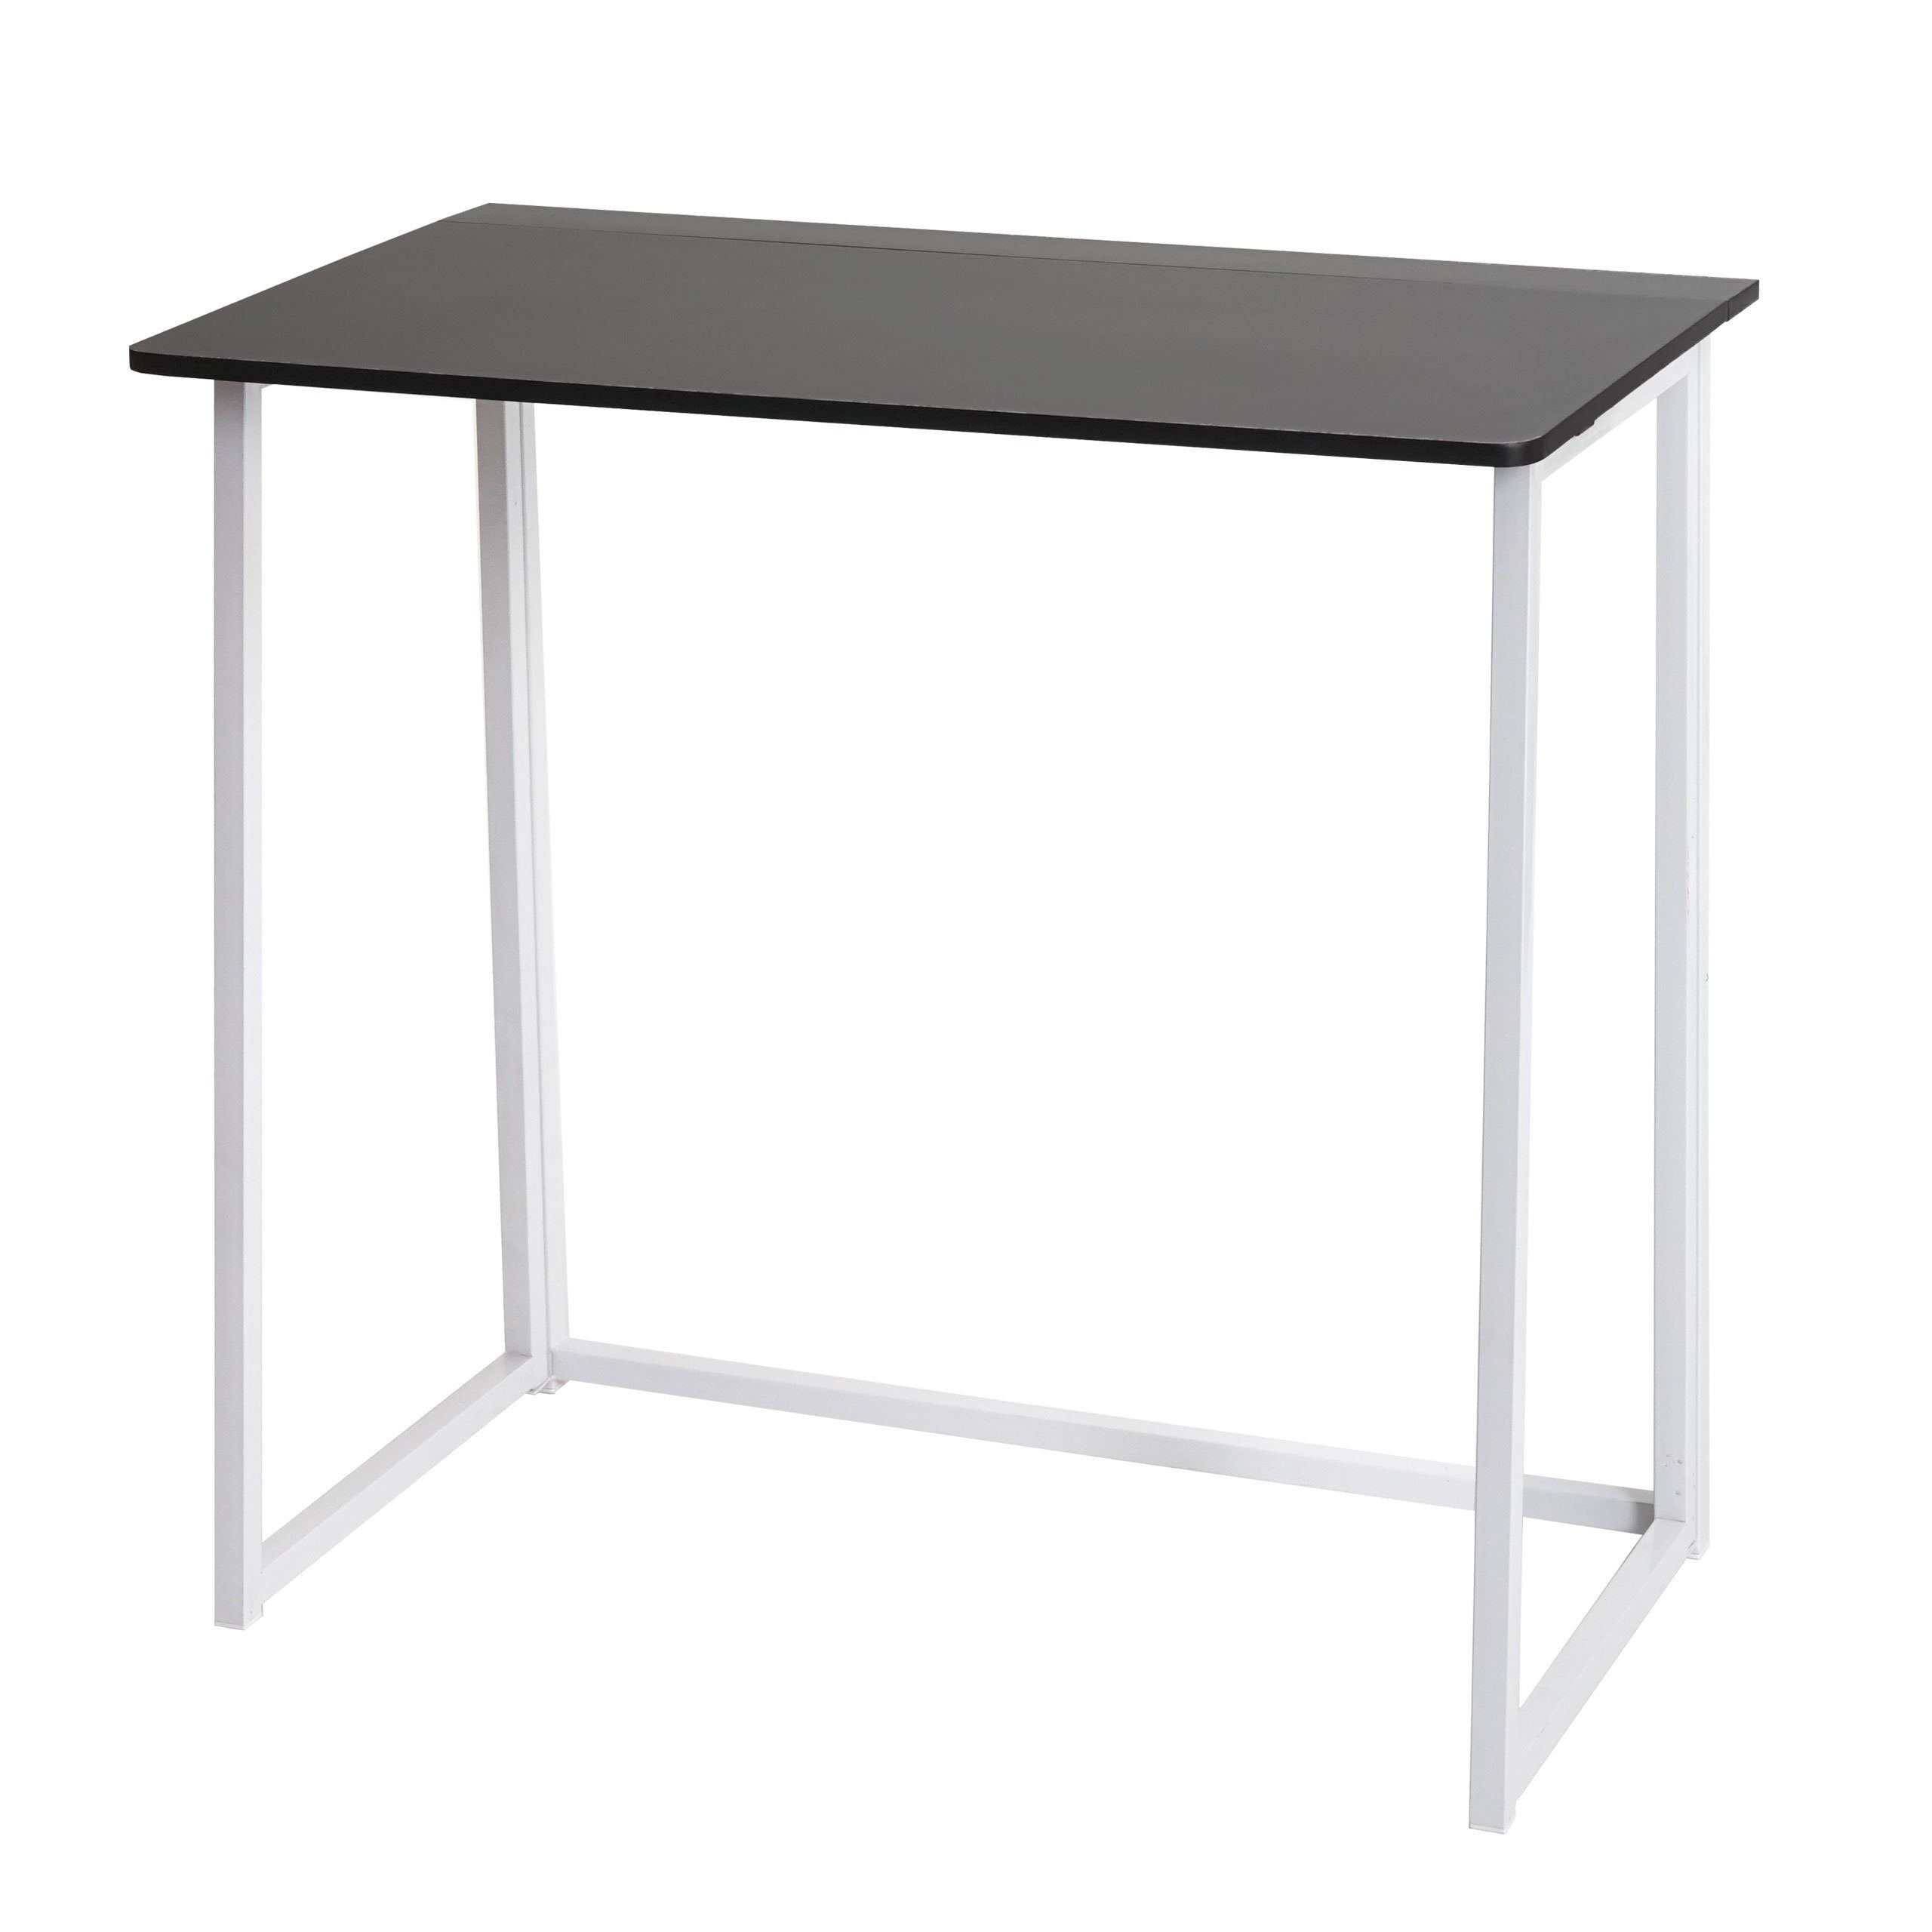 MCW Schreibtisch MCW-K67, Platzsparend zusammen klappbar, Klappbar schwarz-weiß | weiß | schwarz